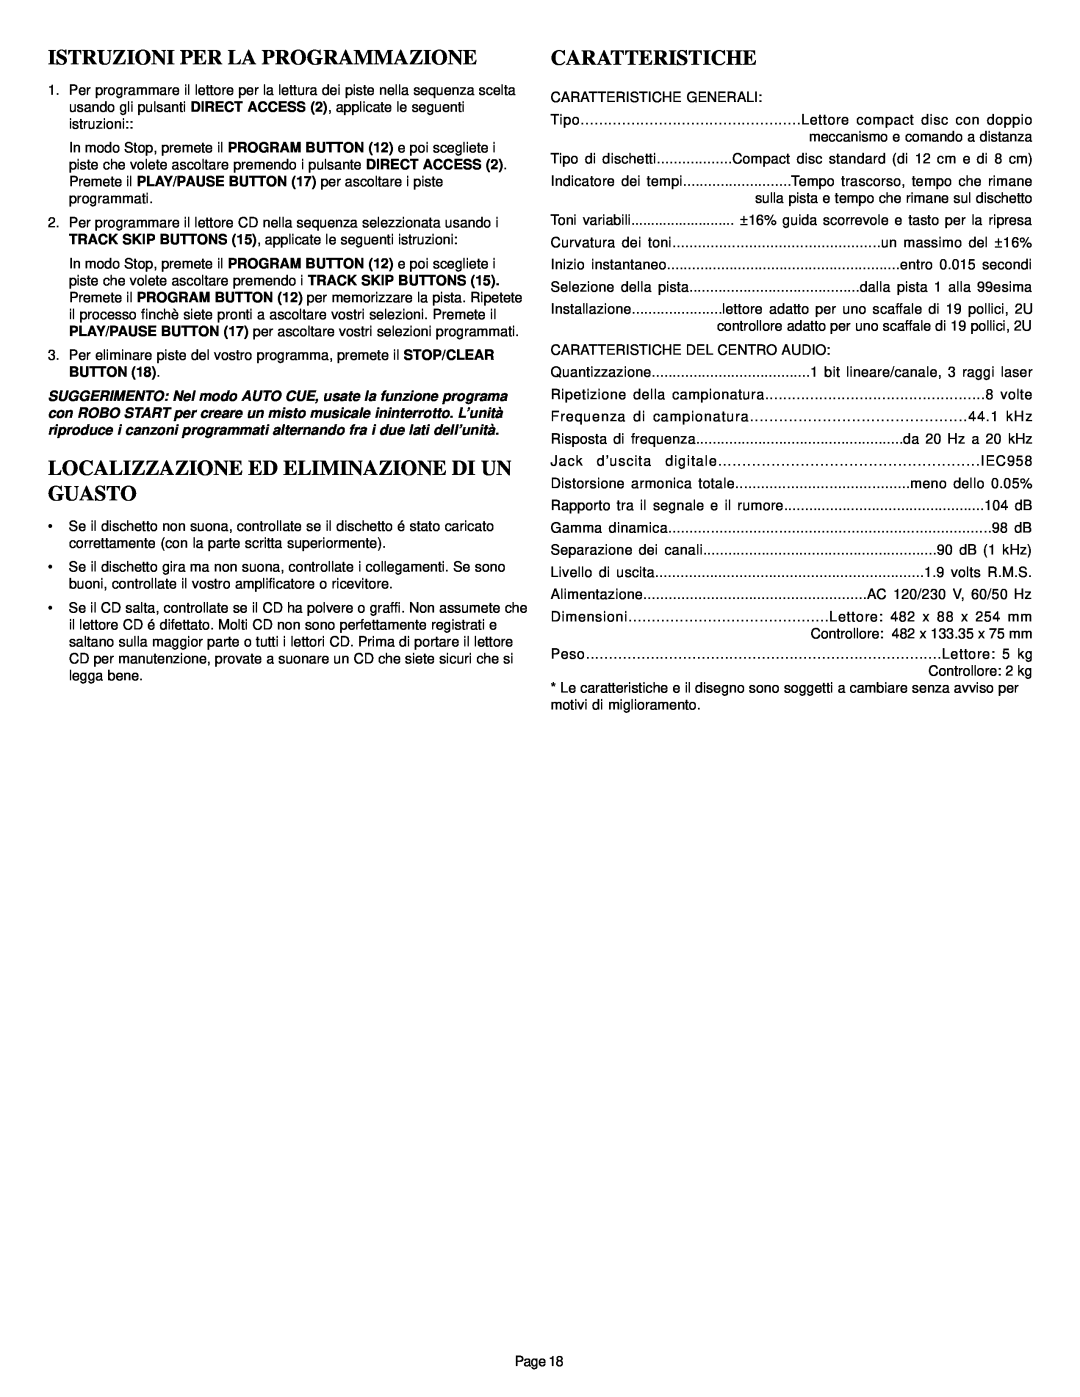 Gemini CD-340 manual Istruzioni Per La Programmazione, Localizzazione Ed Eliminazione Di Un Guasto, Caratteristiche 